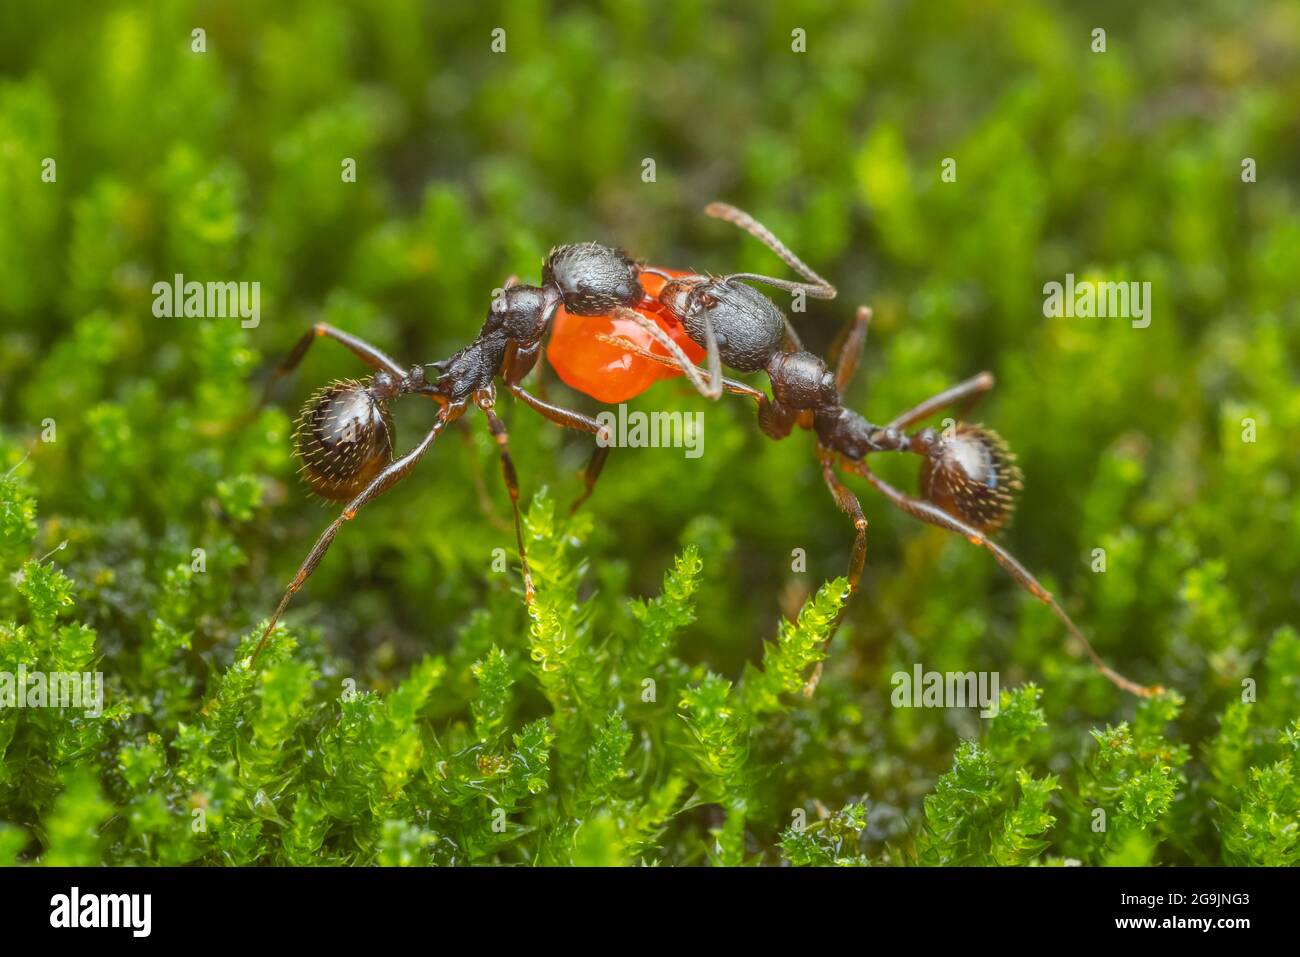 Dos trabajadores de la Ant con cintura espina (Aphaenogaster picea) llevan una semilla de vuelta a su colonia. Foto de stock